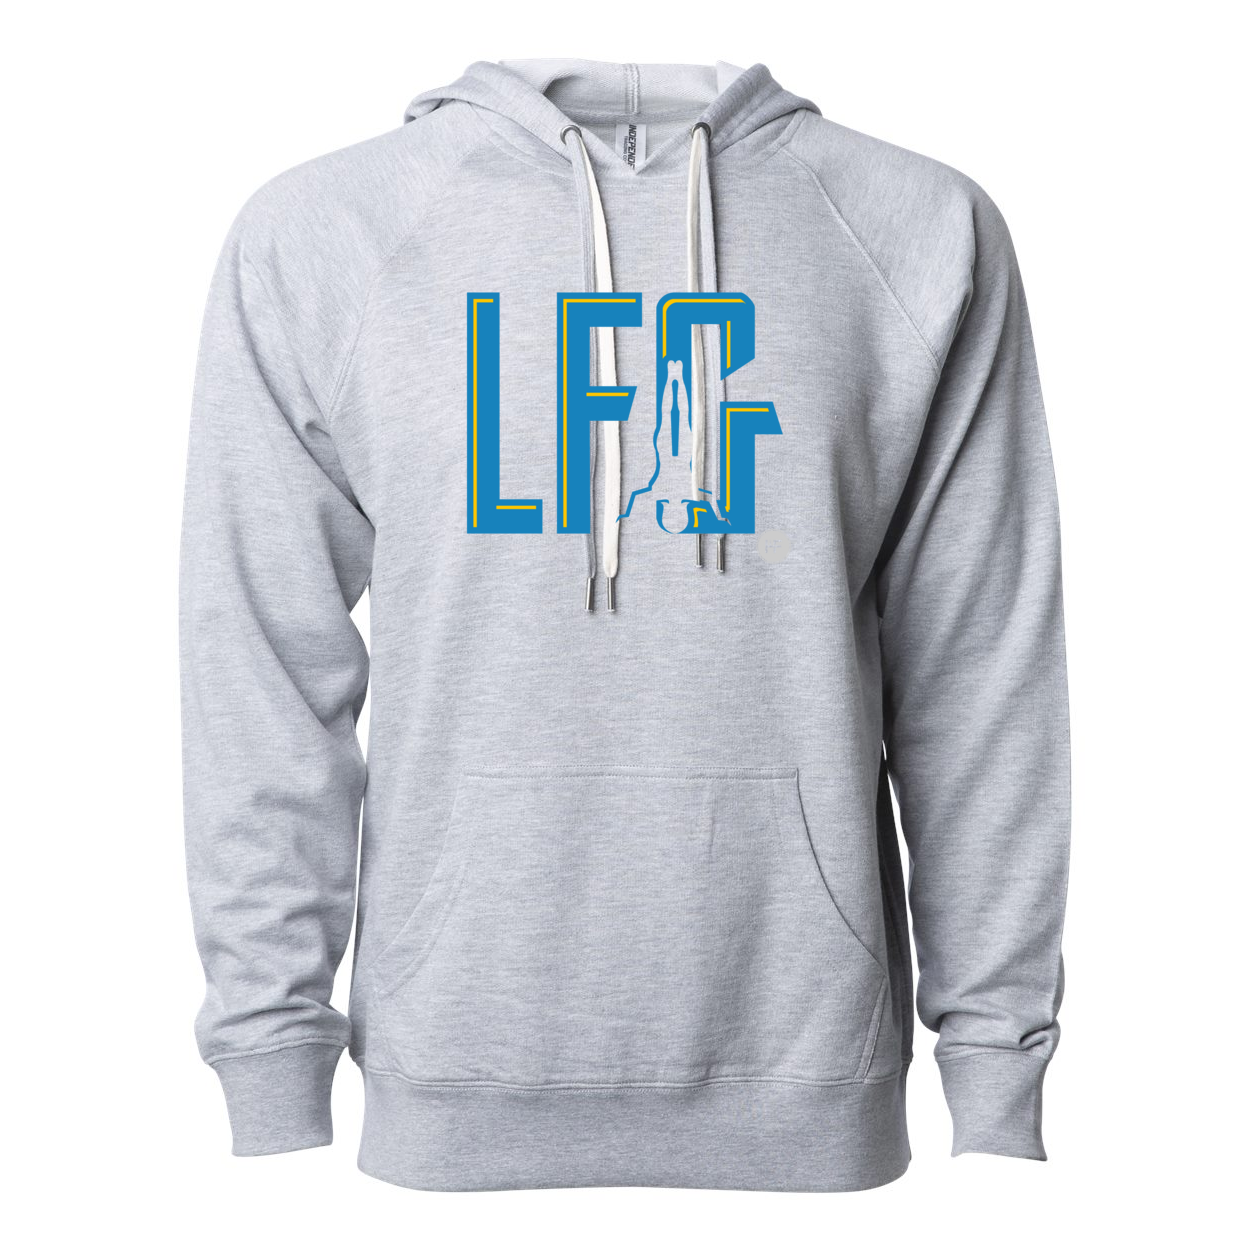 LFG Unisex Lightweight Hooded Sweatshirt